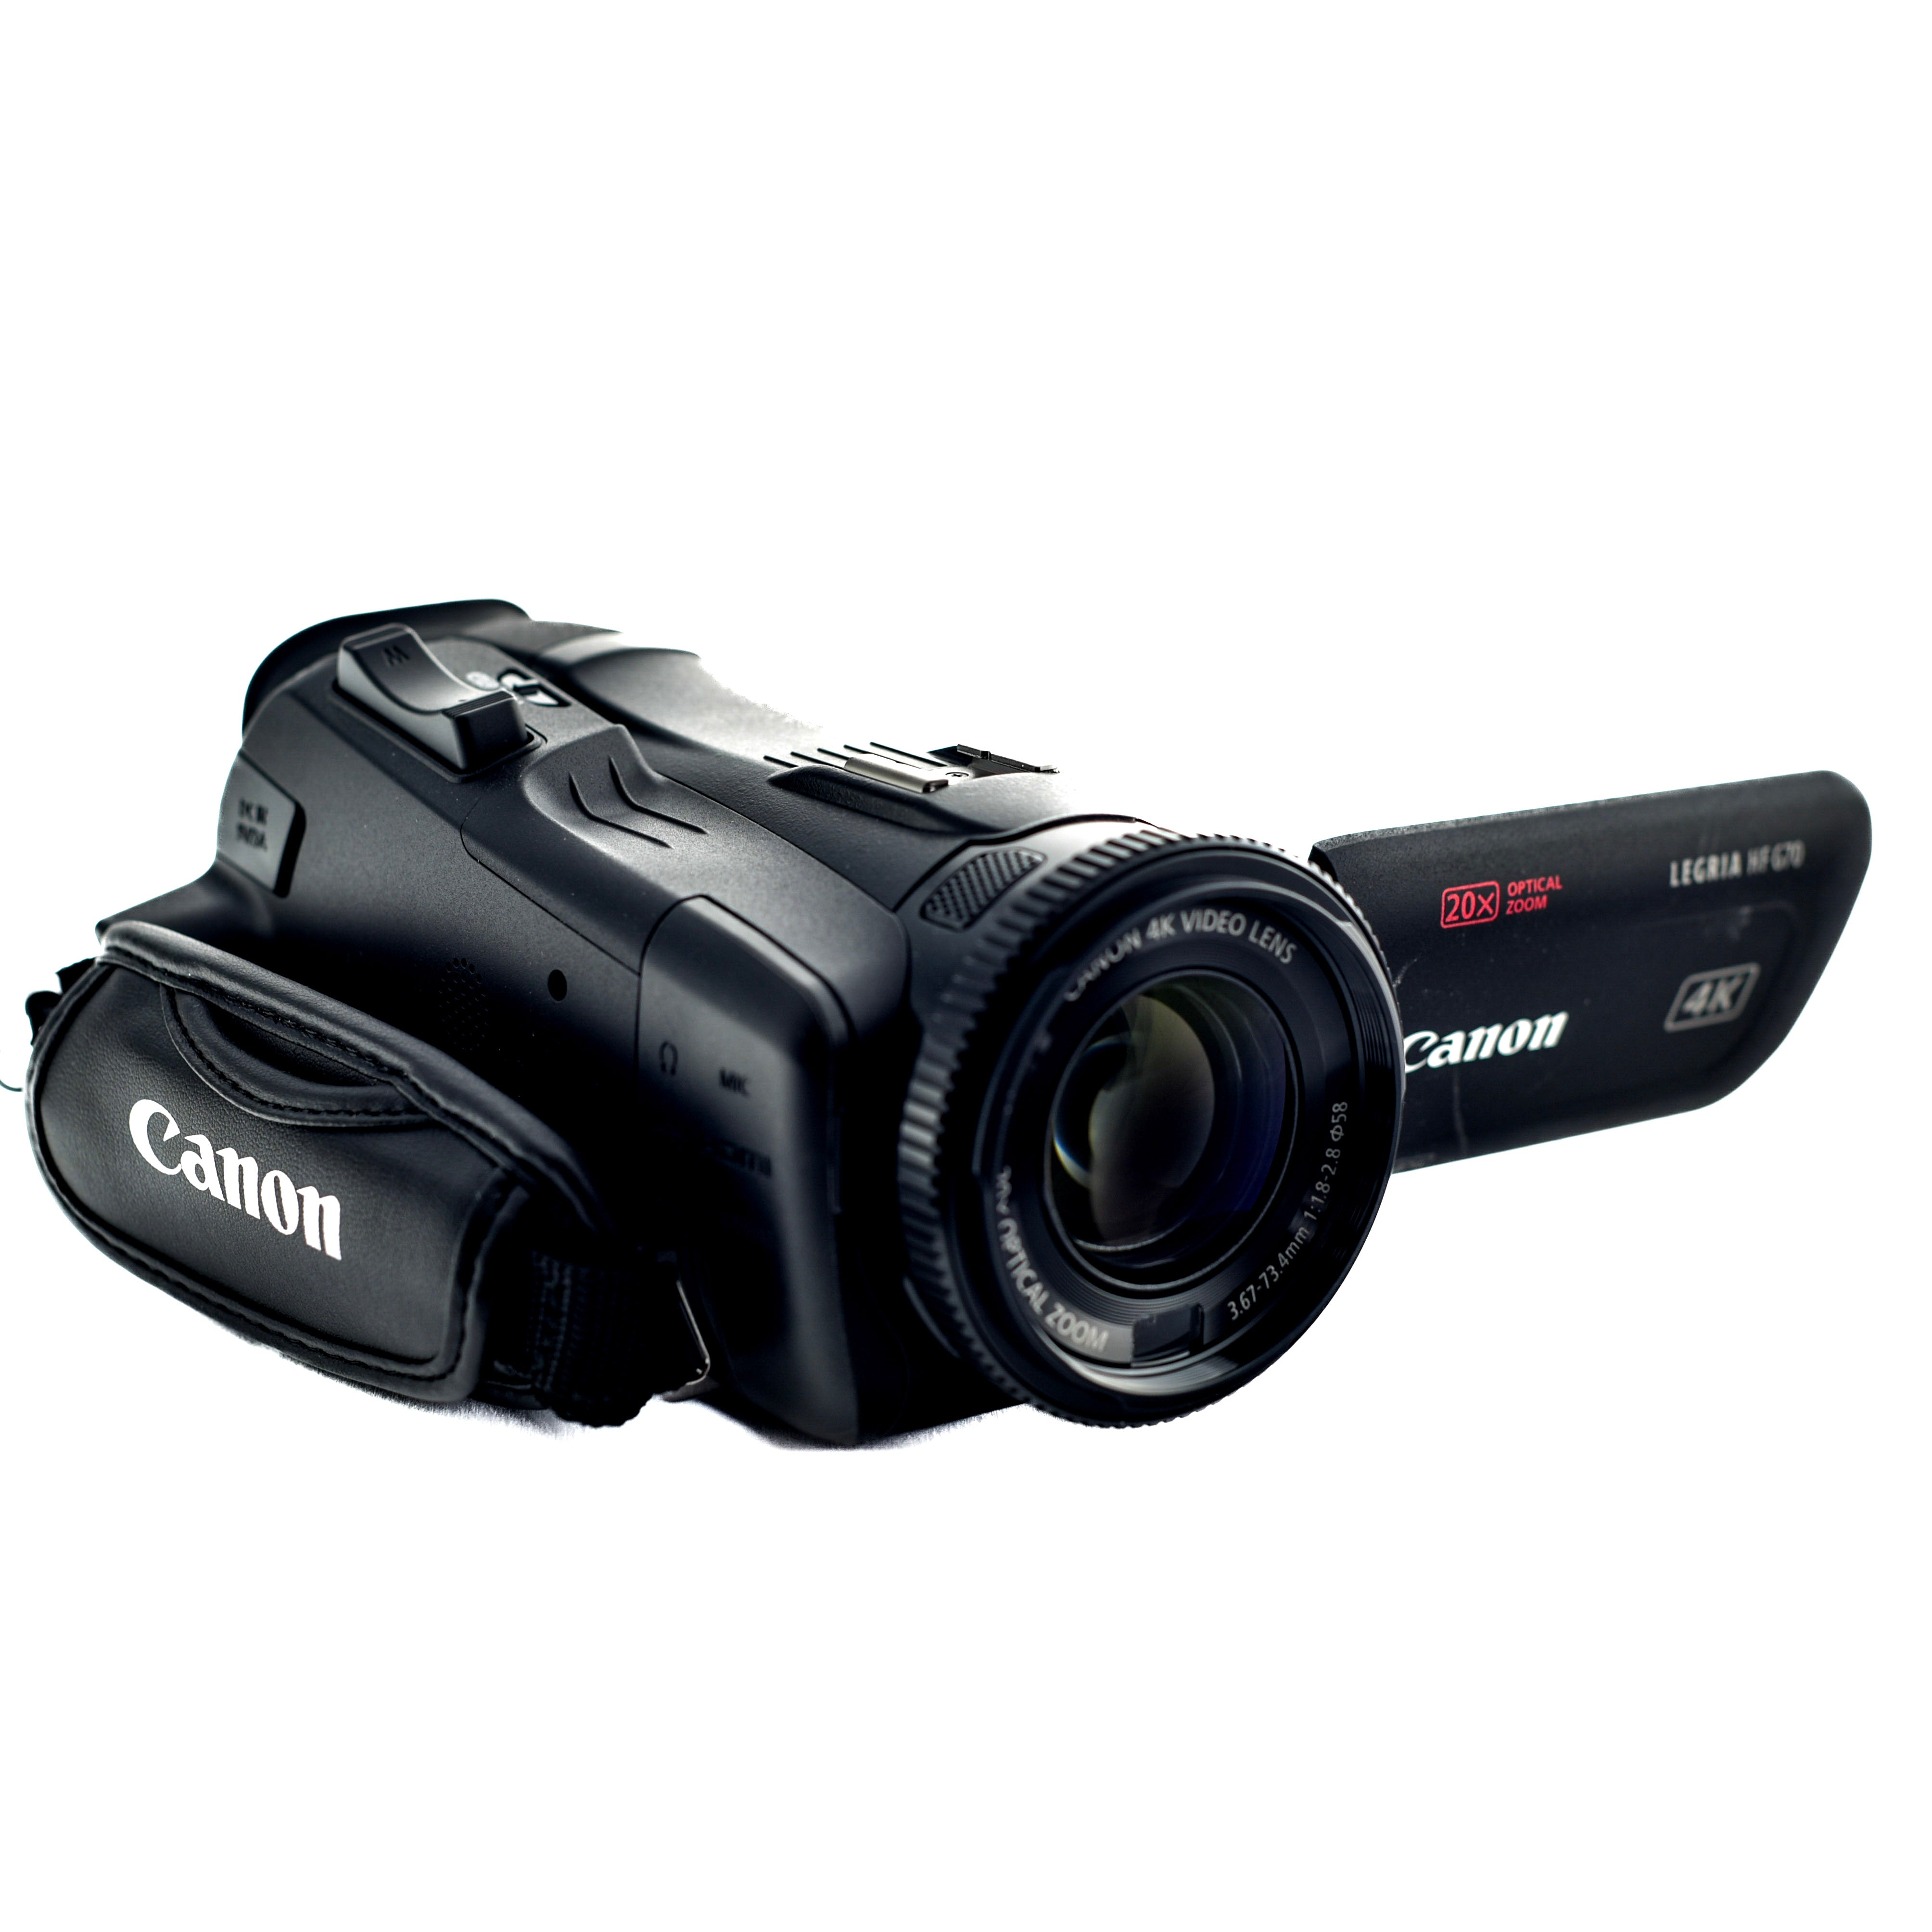 Canon Legria HF G70 4k Camcorder